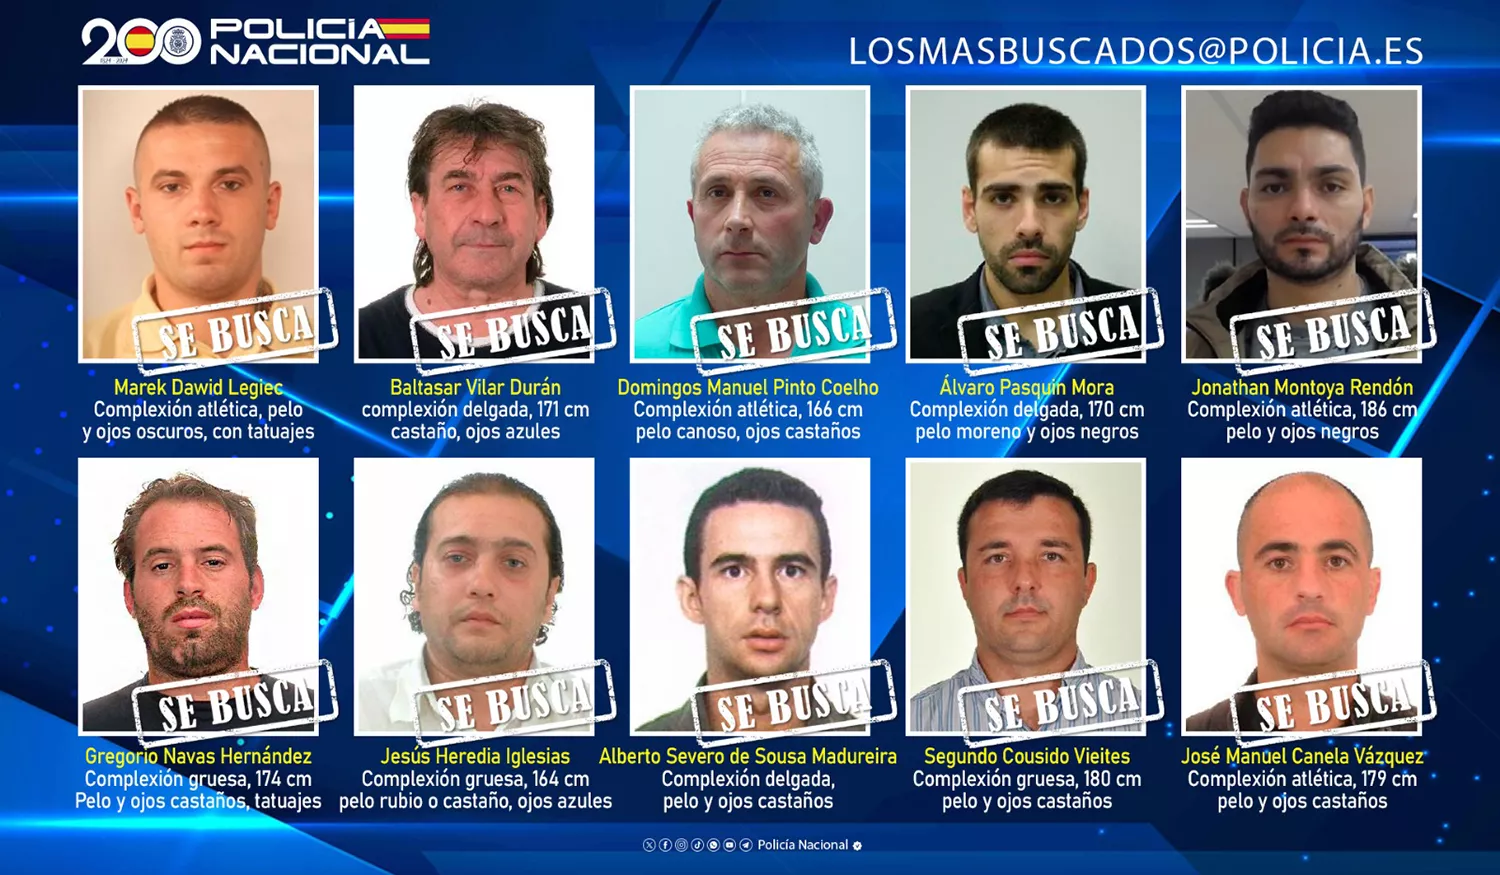 Estos son los 10 delincuentes fugitivos más buscados por la Policía Nacional